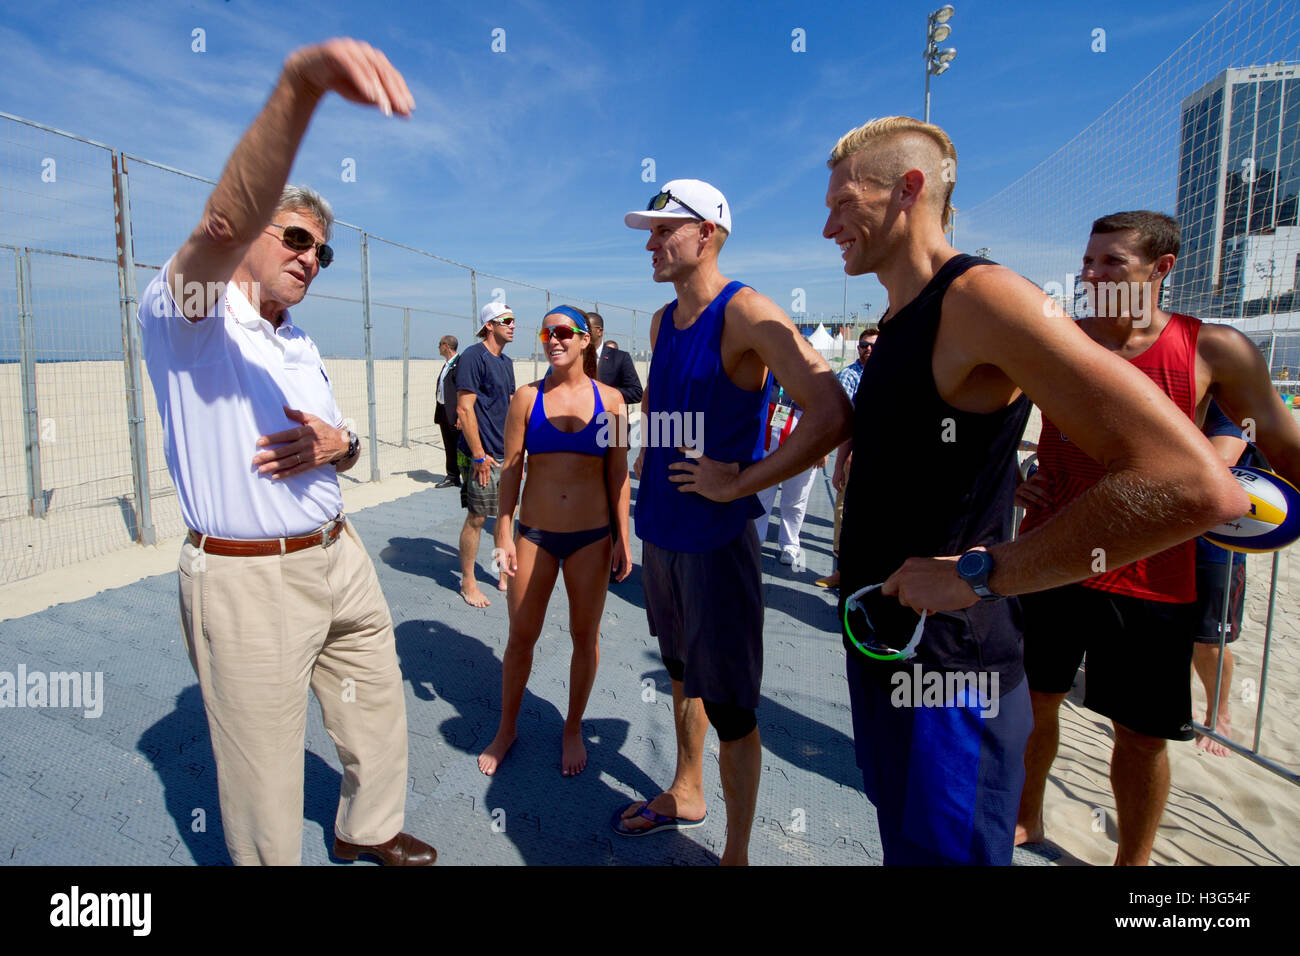 El Secretario de Estado de Estados Unidos, John Kerry habla con hombres olímpico estadounidense jugador del voleibol de la playa Casey Patterson y otros miembros del equipo en el Copacobana playa en Río de Janeiro, Brasil, el 6 de agosto de 2016, él y sus colegas de la delegación presidencial de EE.UU. asistir a los Juegos Olímpicos de Verano. Foto de stock